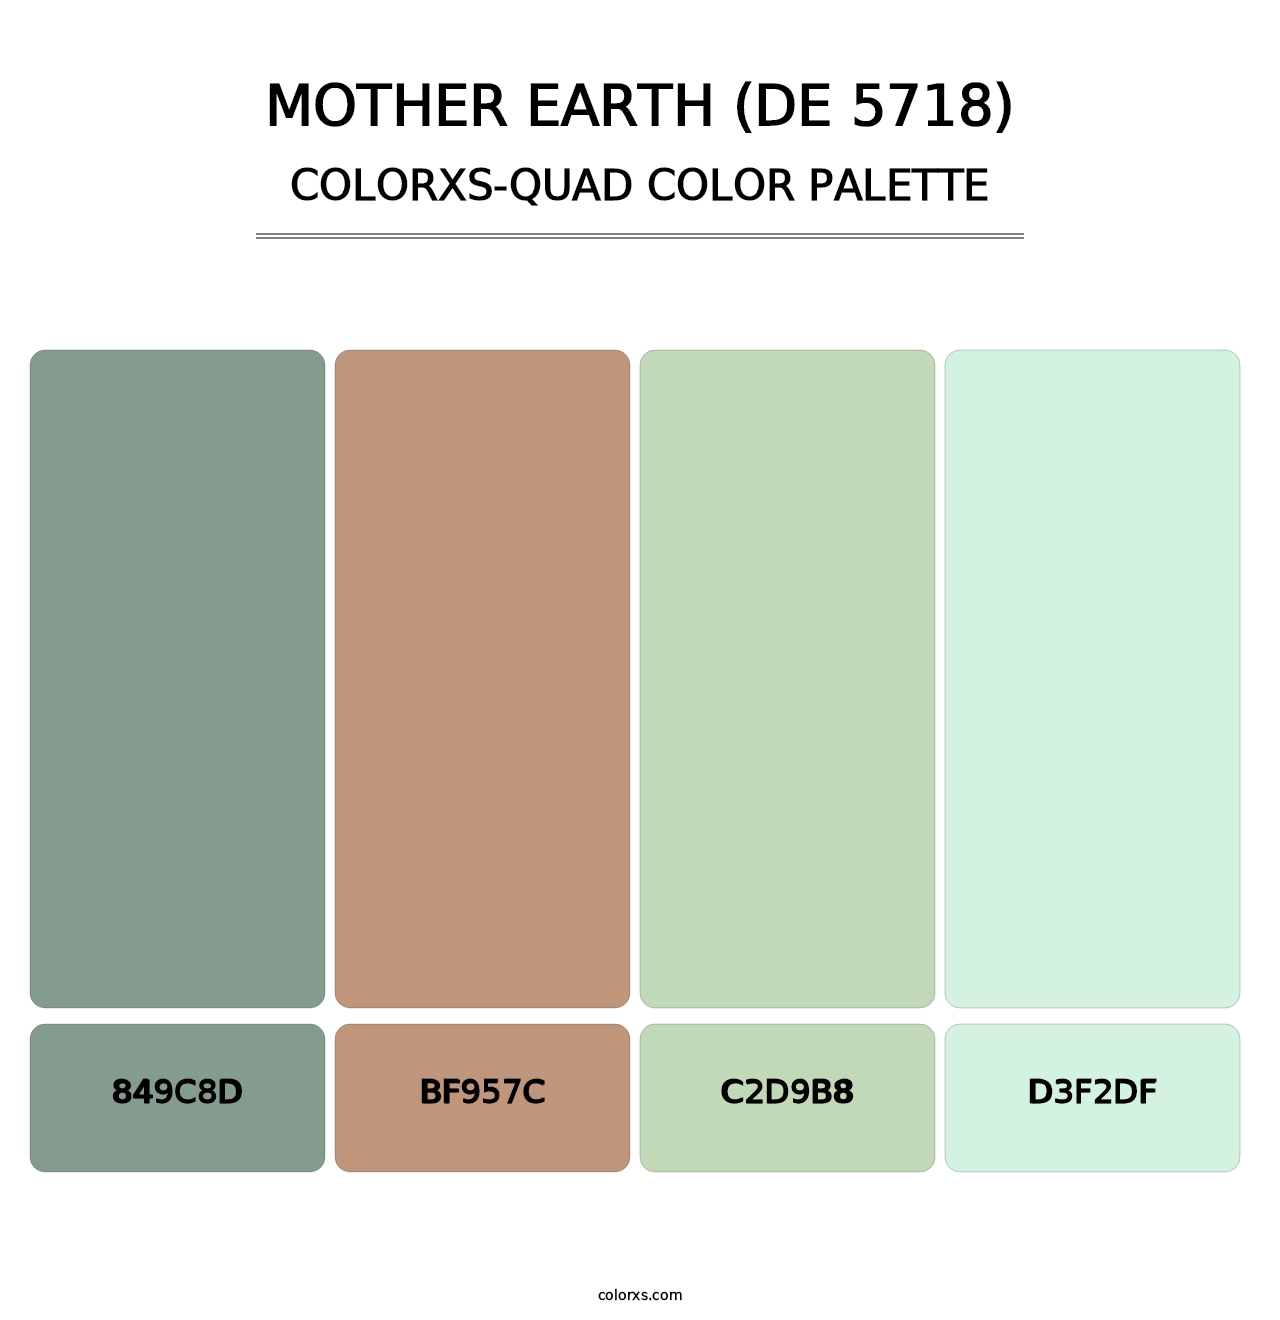 Mother Earth (DE 5718) - Colorxs Quad Palette